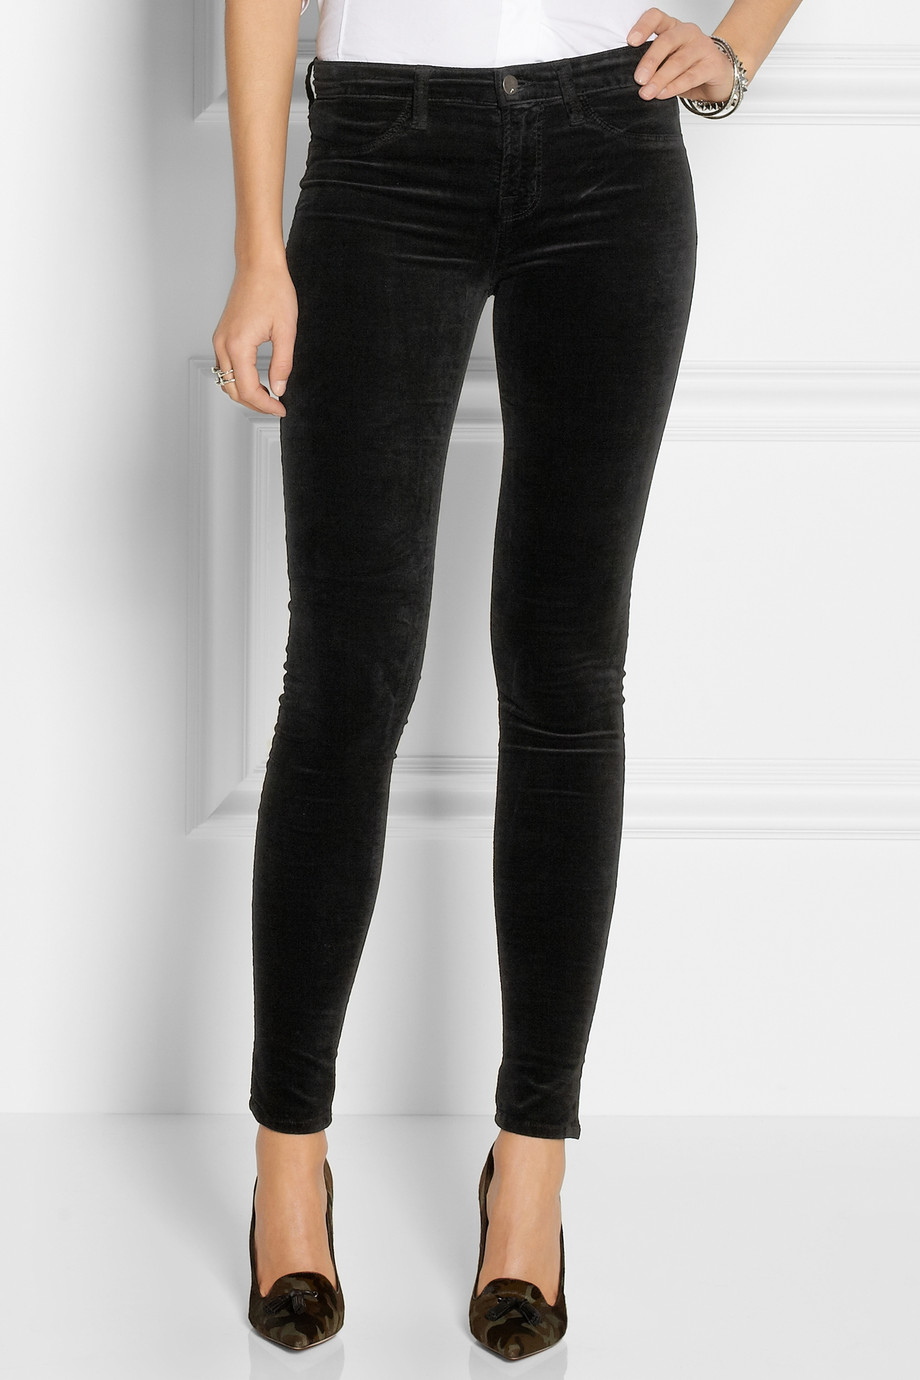 J Brand 815 Midrise Velvet Skinny Jeans in Black - Lyst